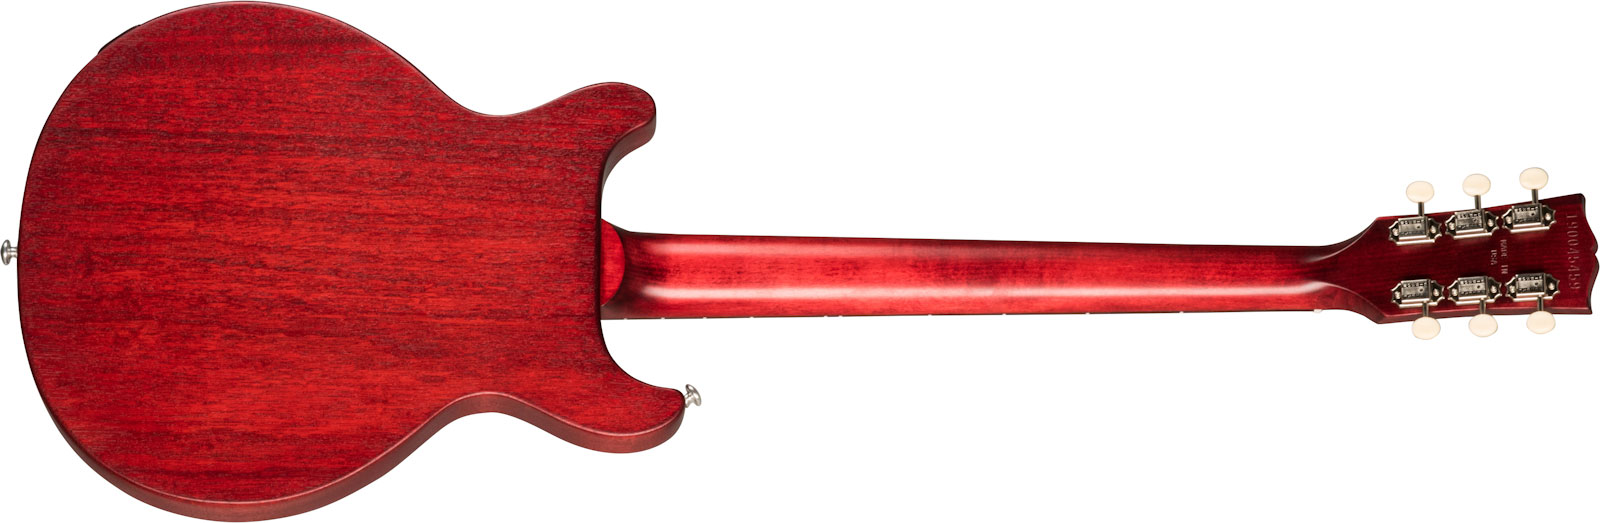 Gibson Les Paul Junior Tribute Dc Modern P90 - Worn Cherry - Guitarra eléctrica de doble corte. - Variation 1